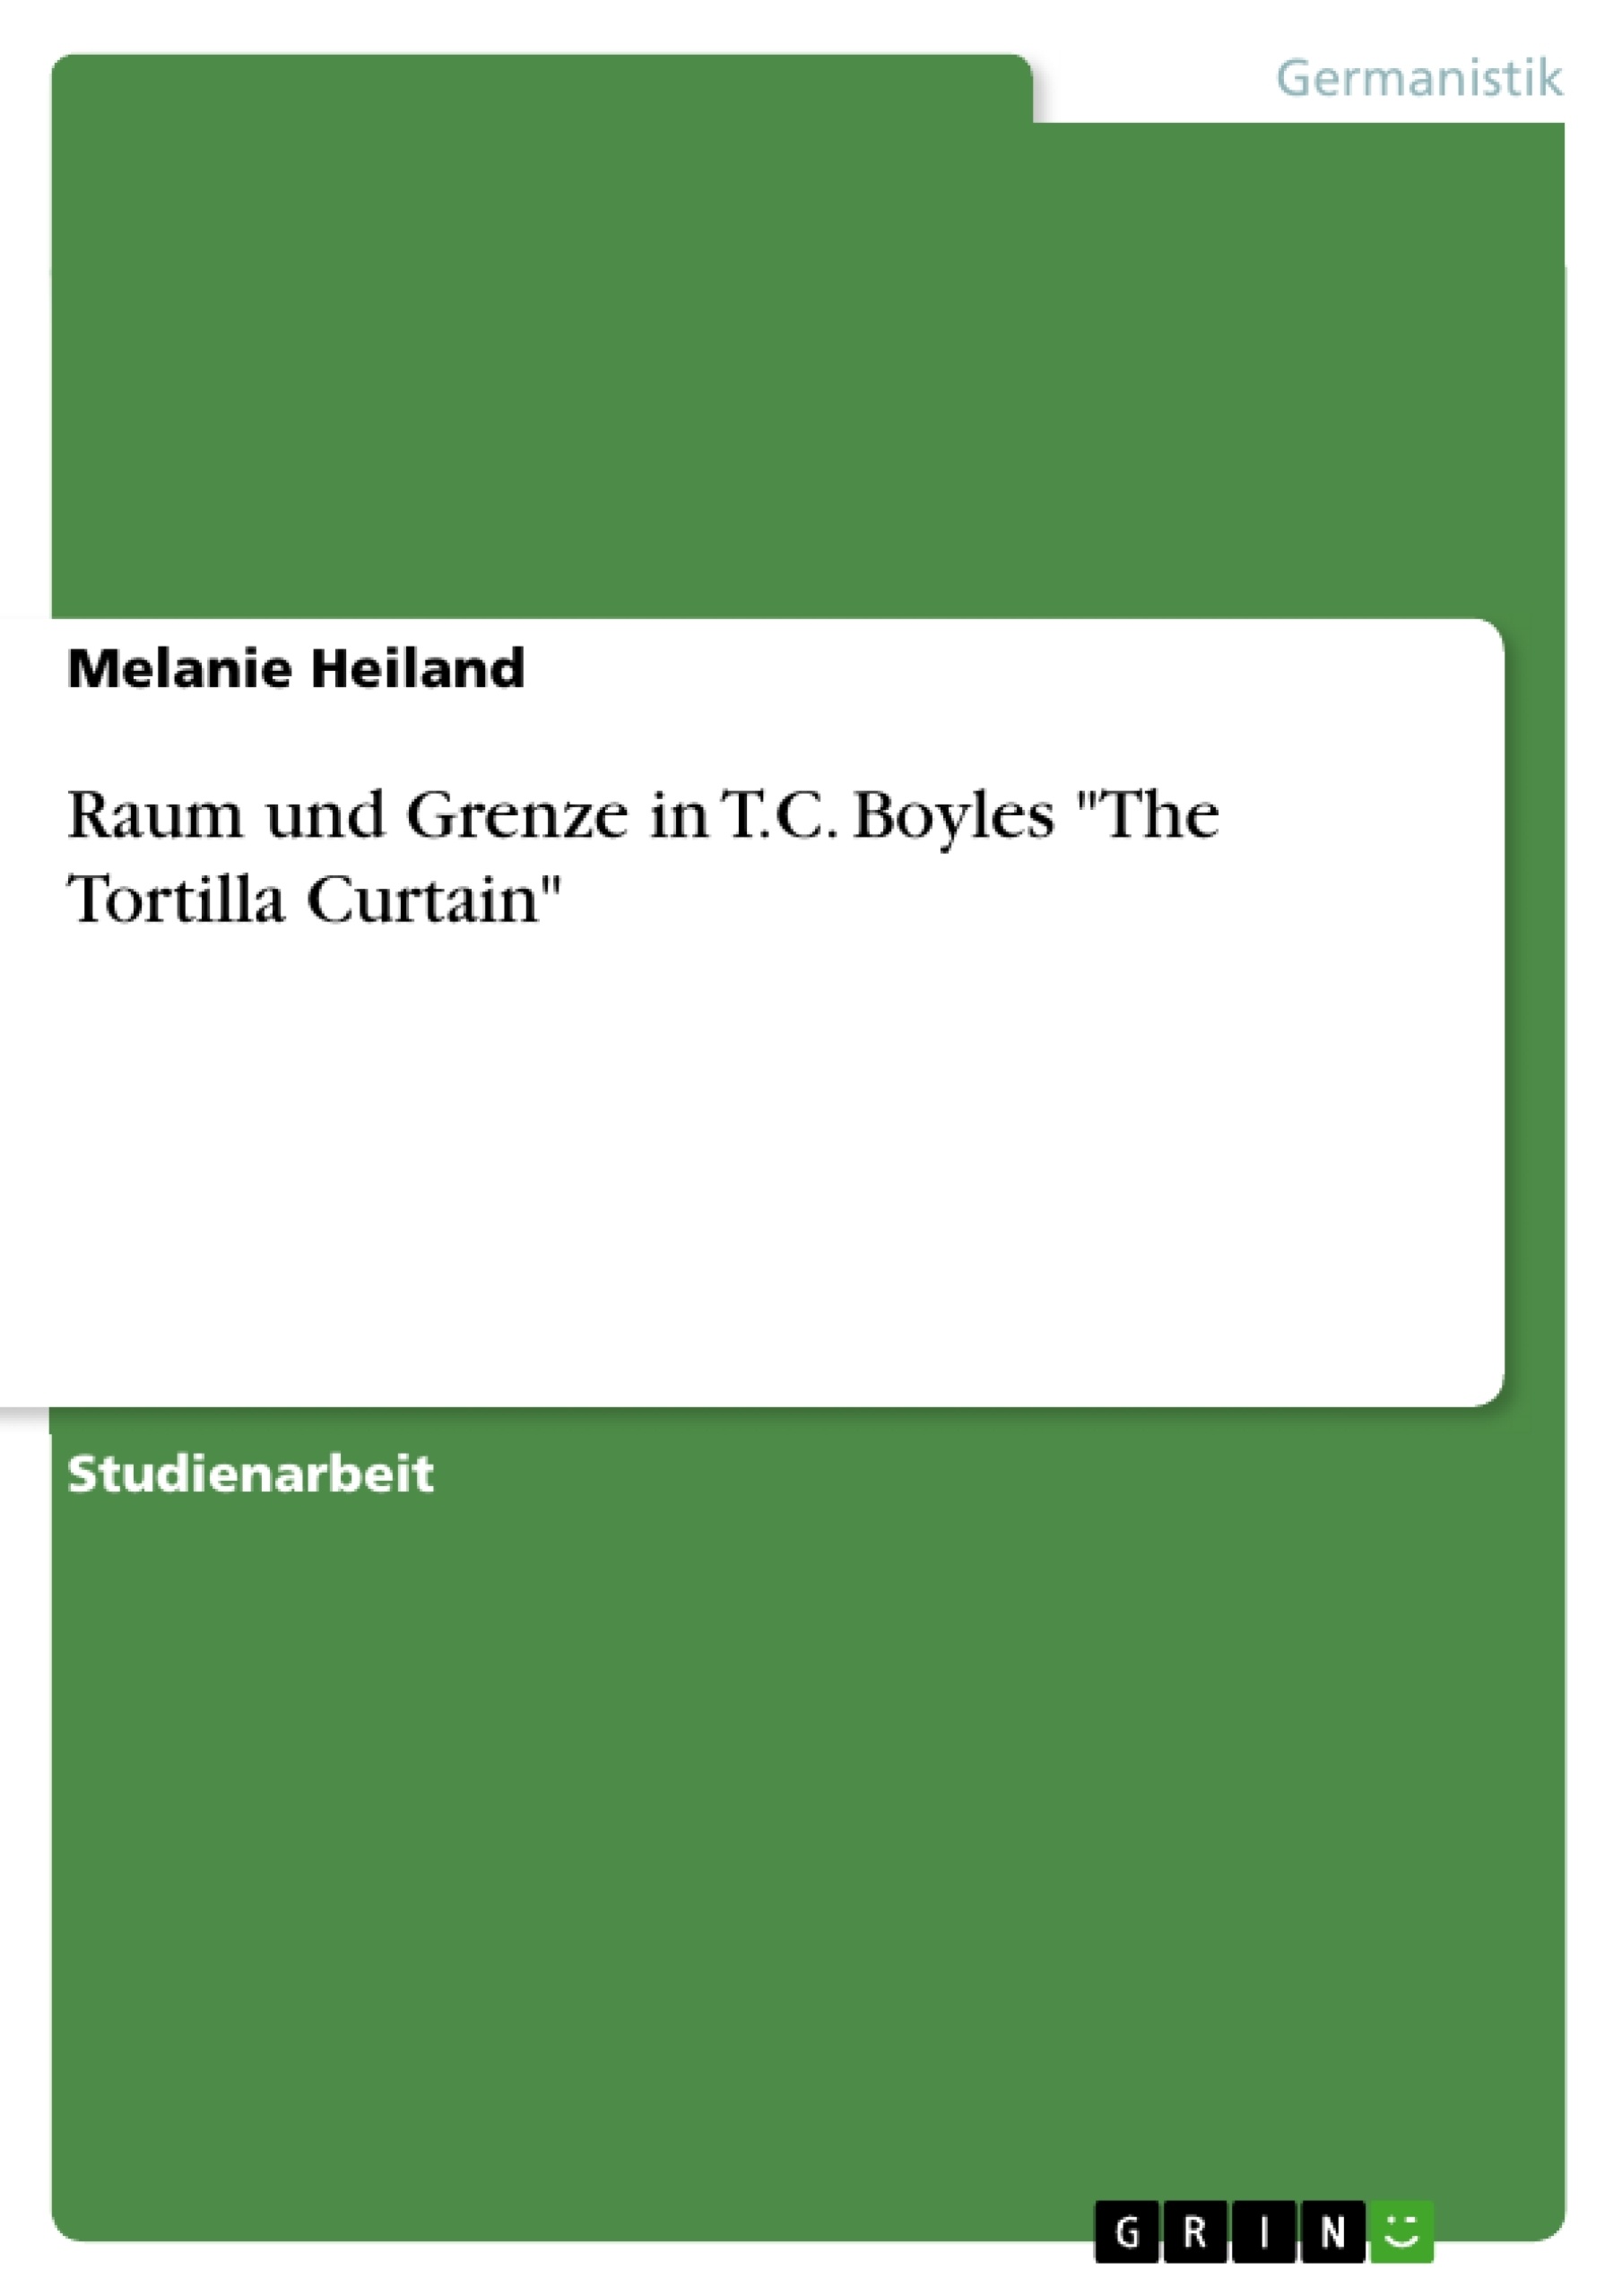 Title: Raum und Grenze in T.C. Boyles "The Tortilla Curtain"